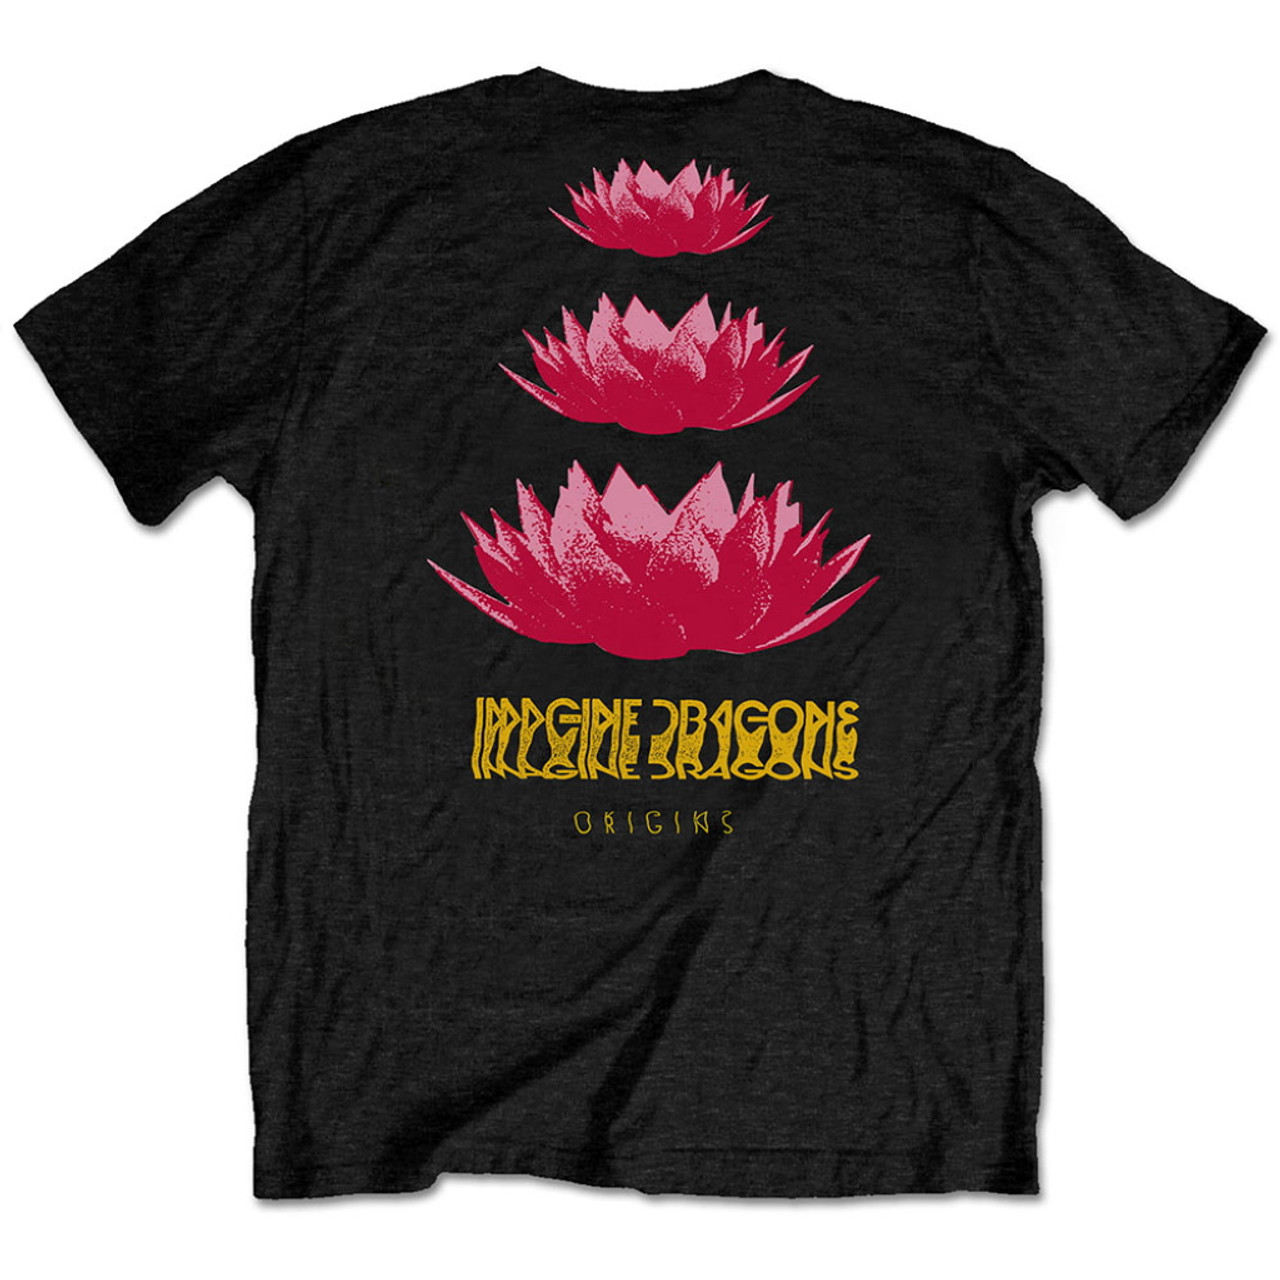 Imagine Dragons 'Origins Lotus' (Black) T-Shirt